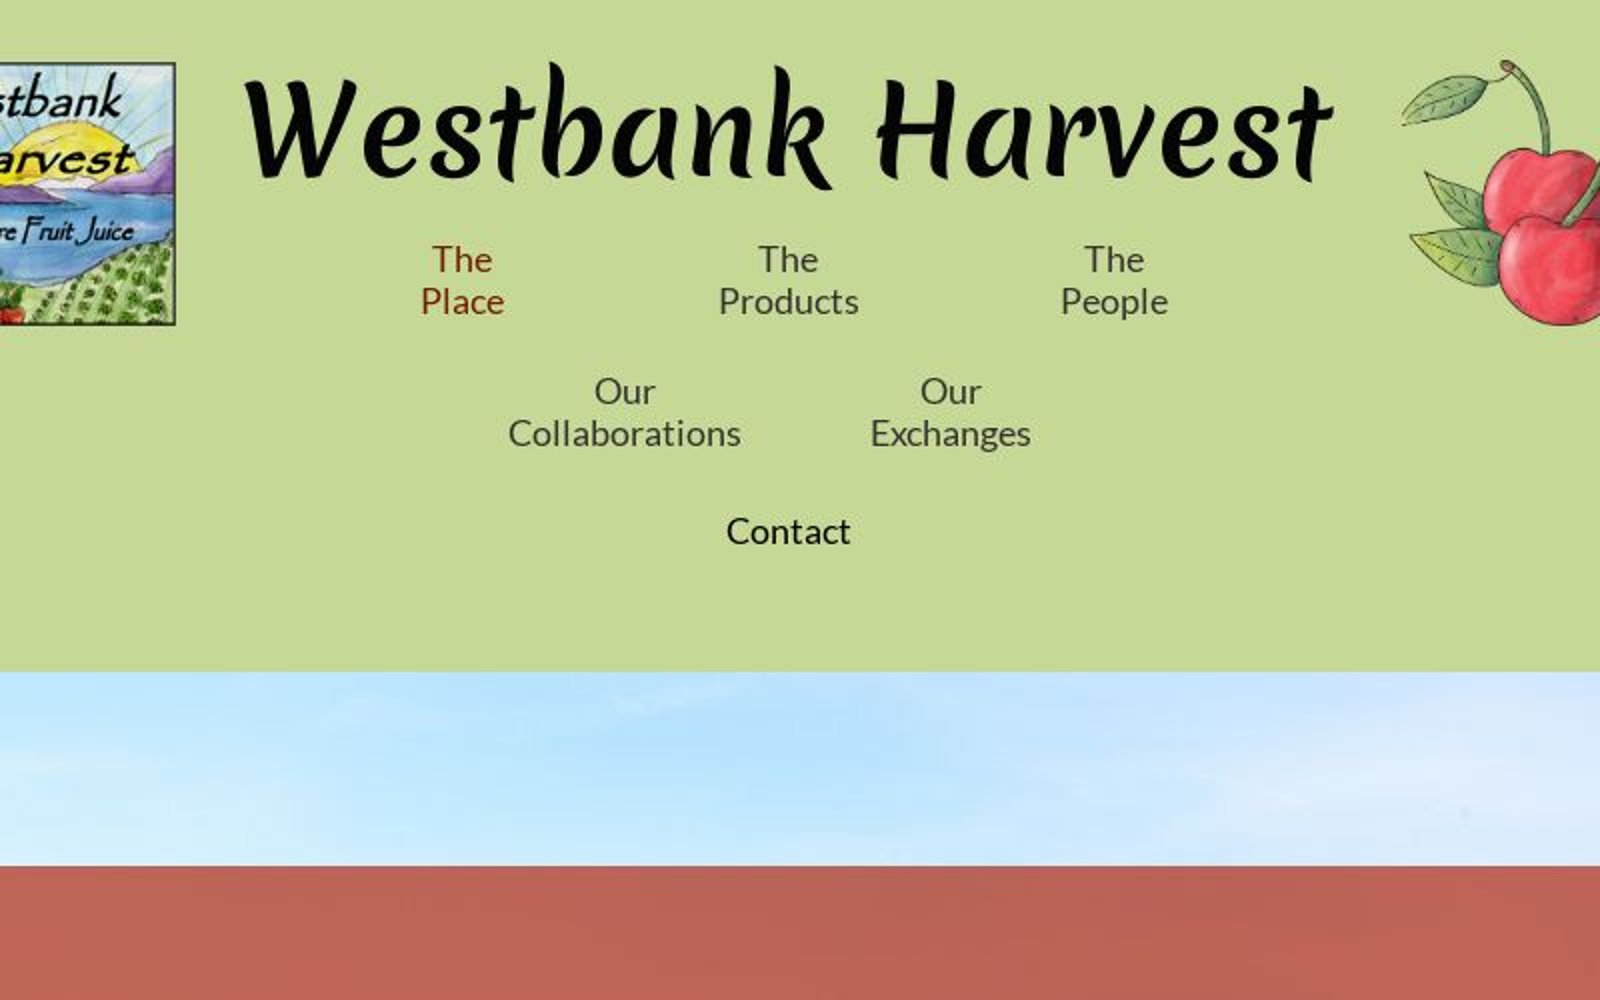 (c) Westbankharvest.com